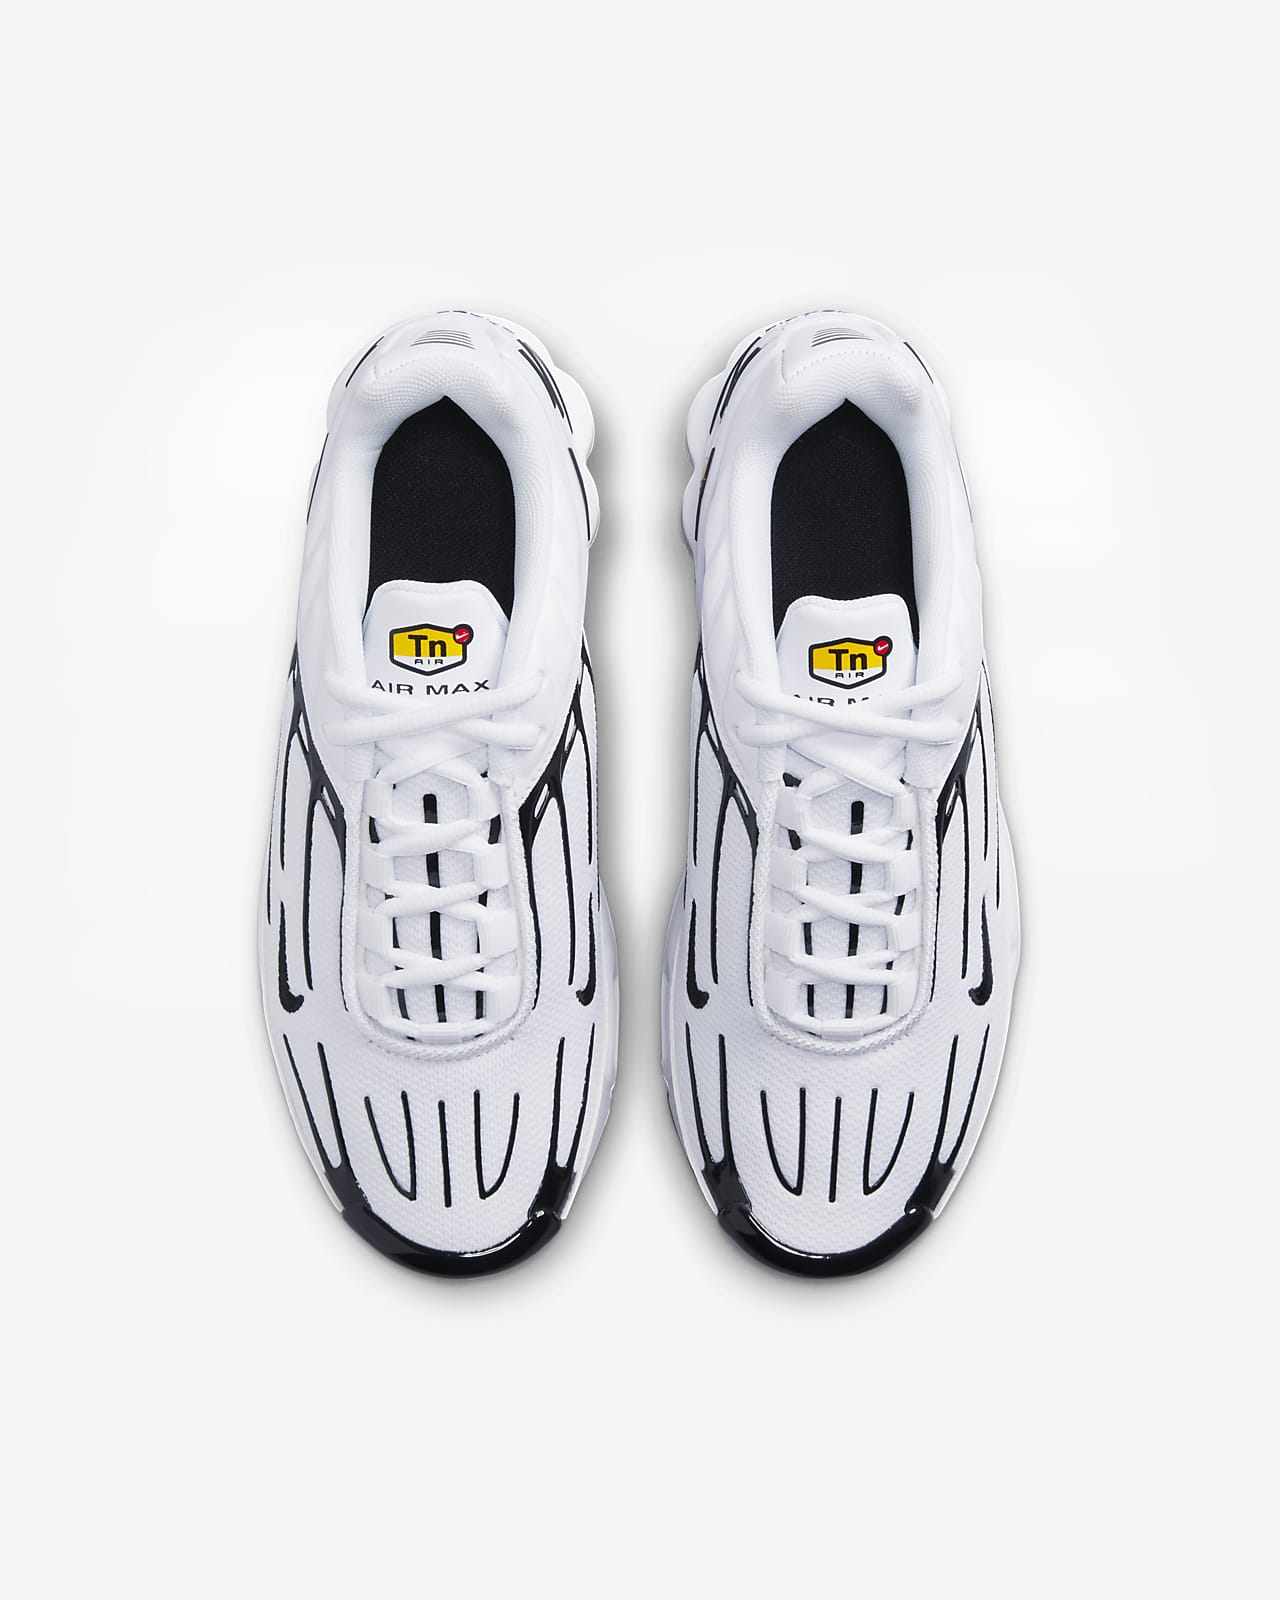 Nike Air Max Plus III Kids - White